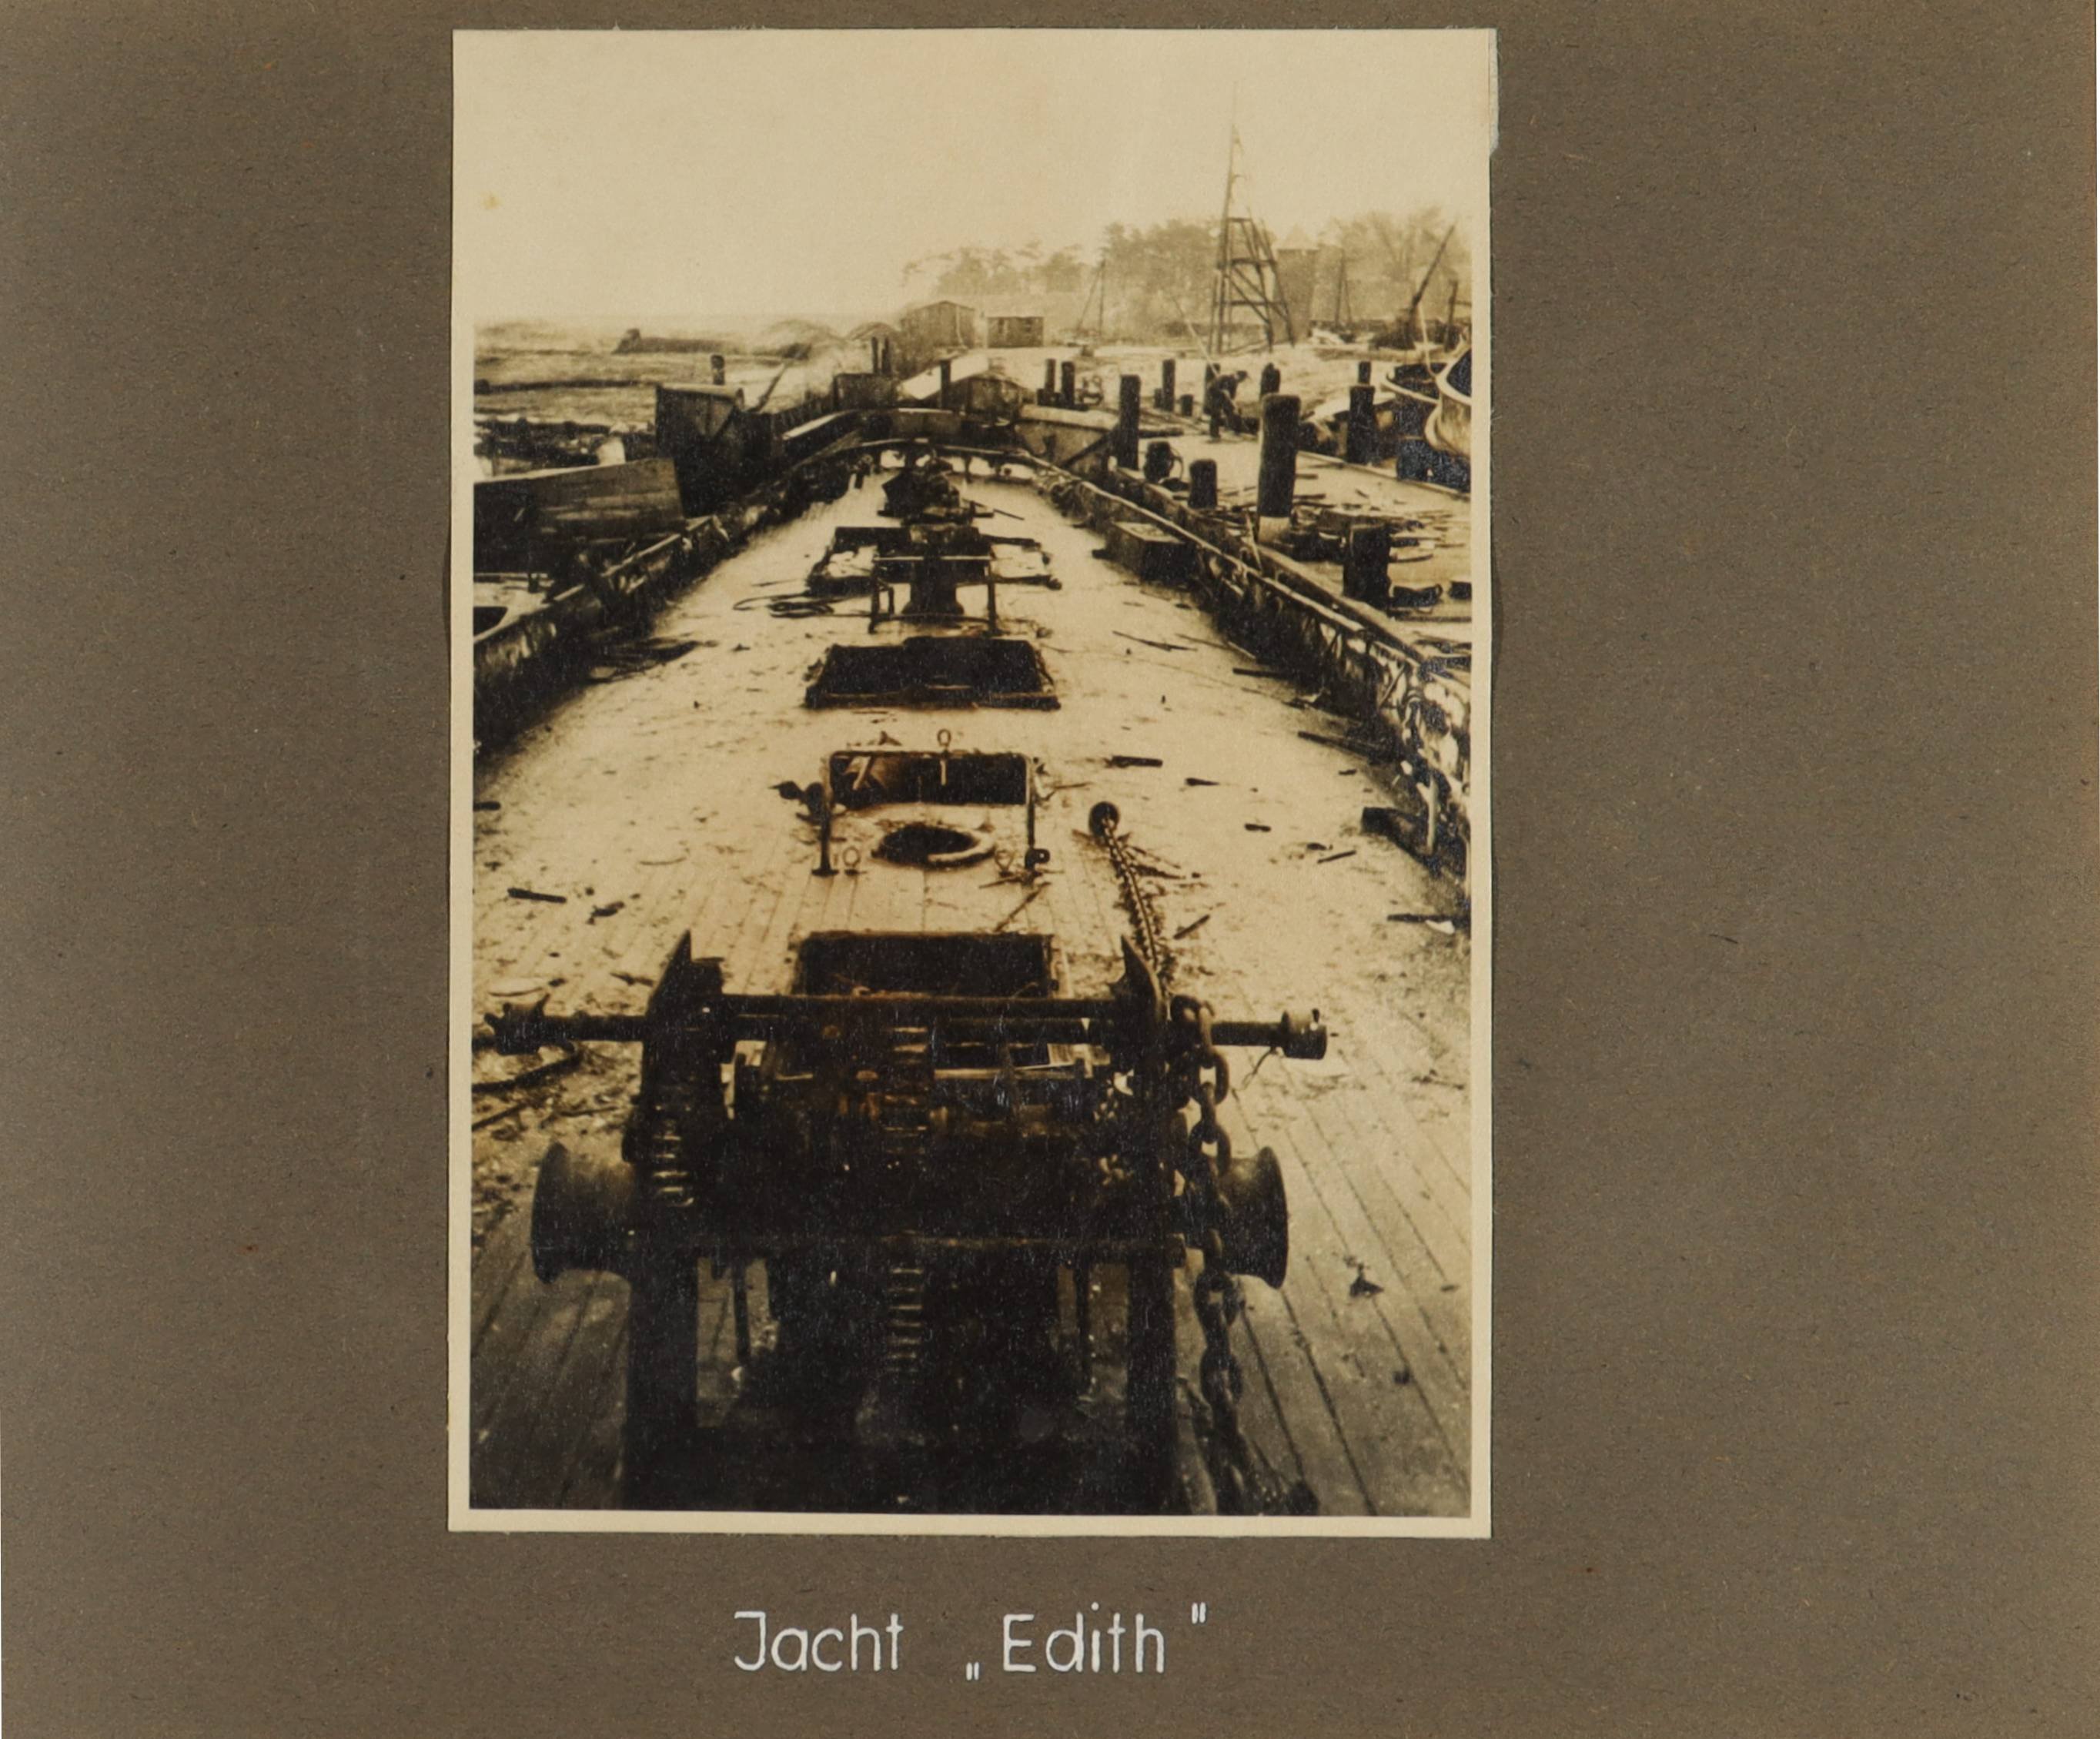 Blick über das Deck der Jacht "Edith" (Schiffbau- und Schiffahrtsmuseum Rostock RR-F)